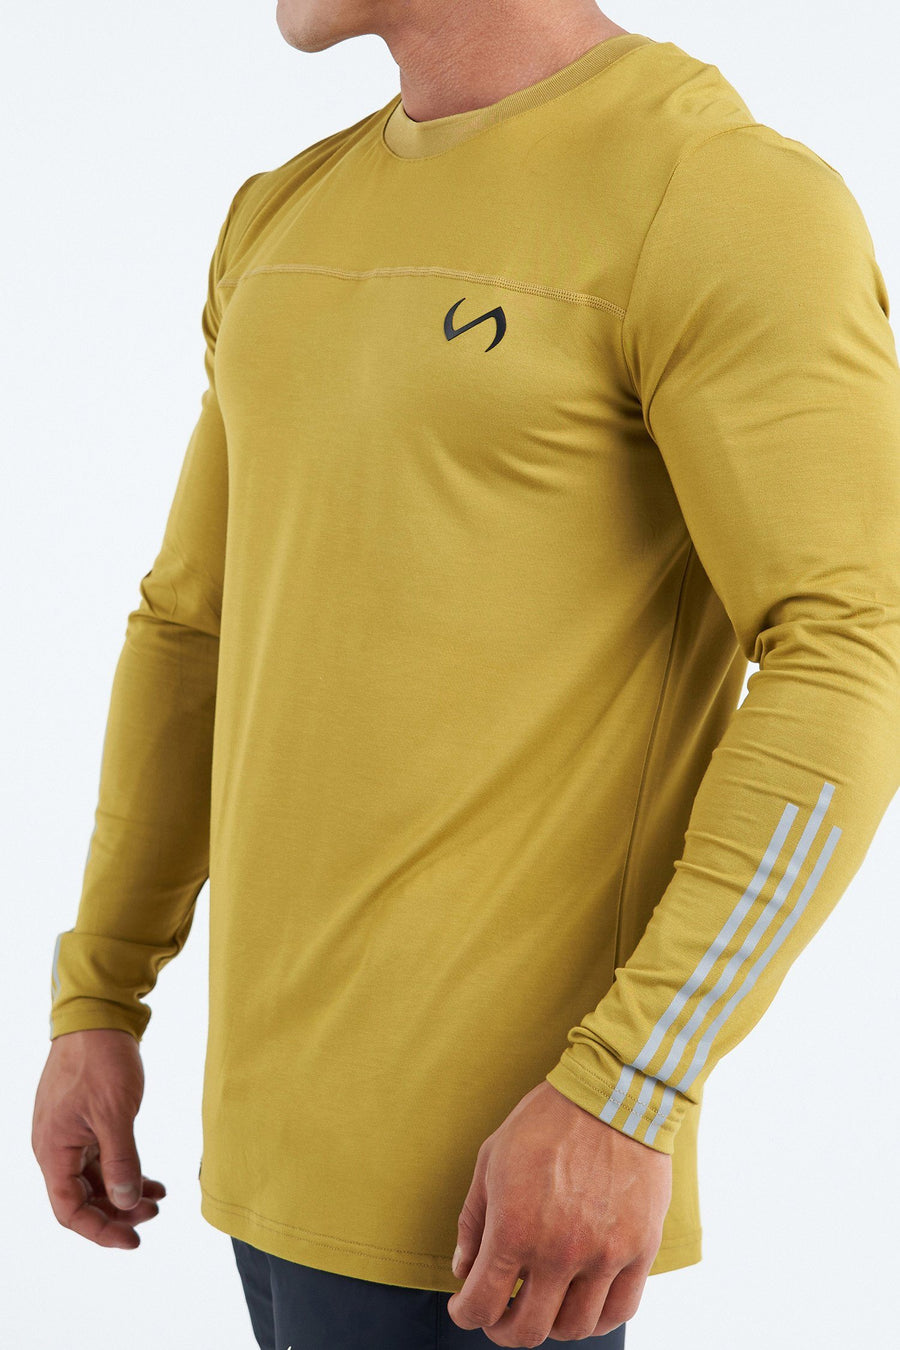 TLF League Air-Flex Long Sleeve | Men’s Long Sleeve Workout Shirt 4